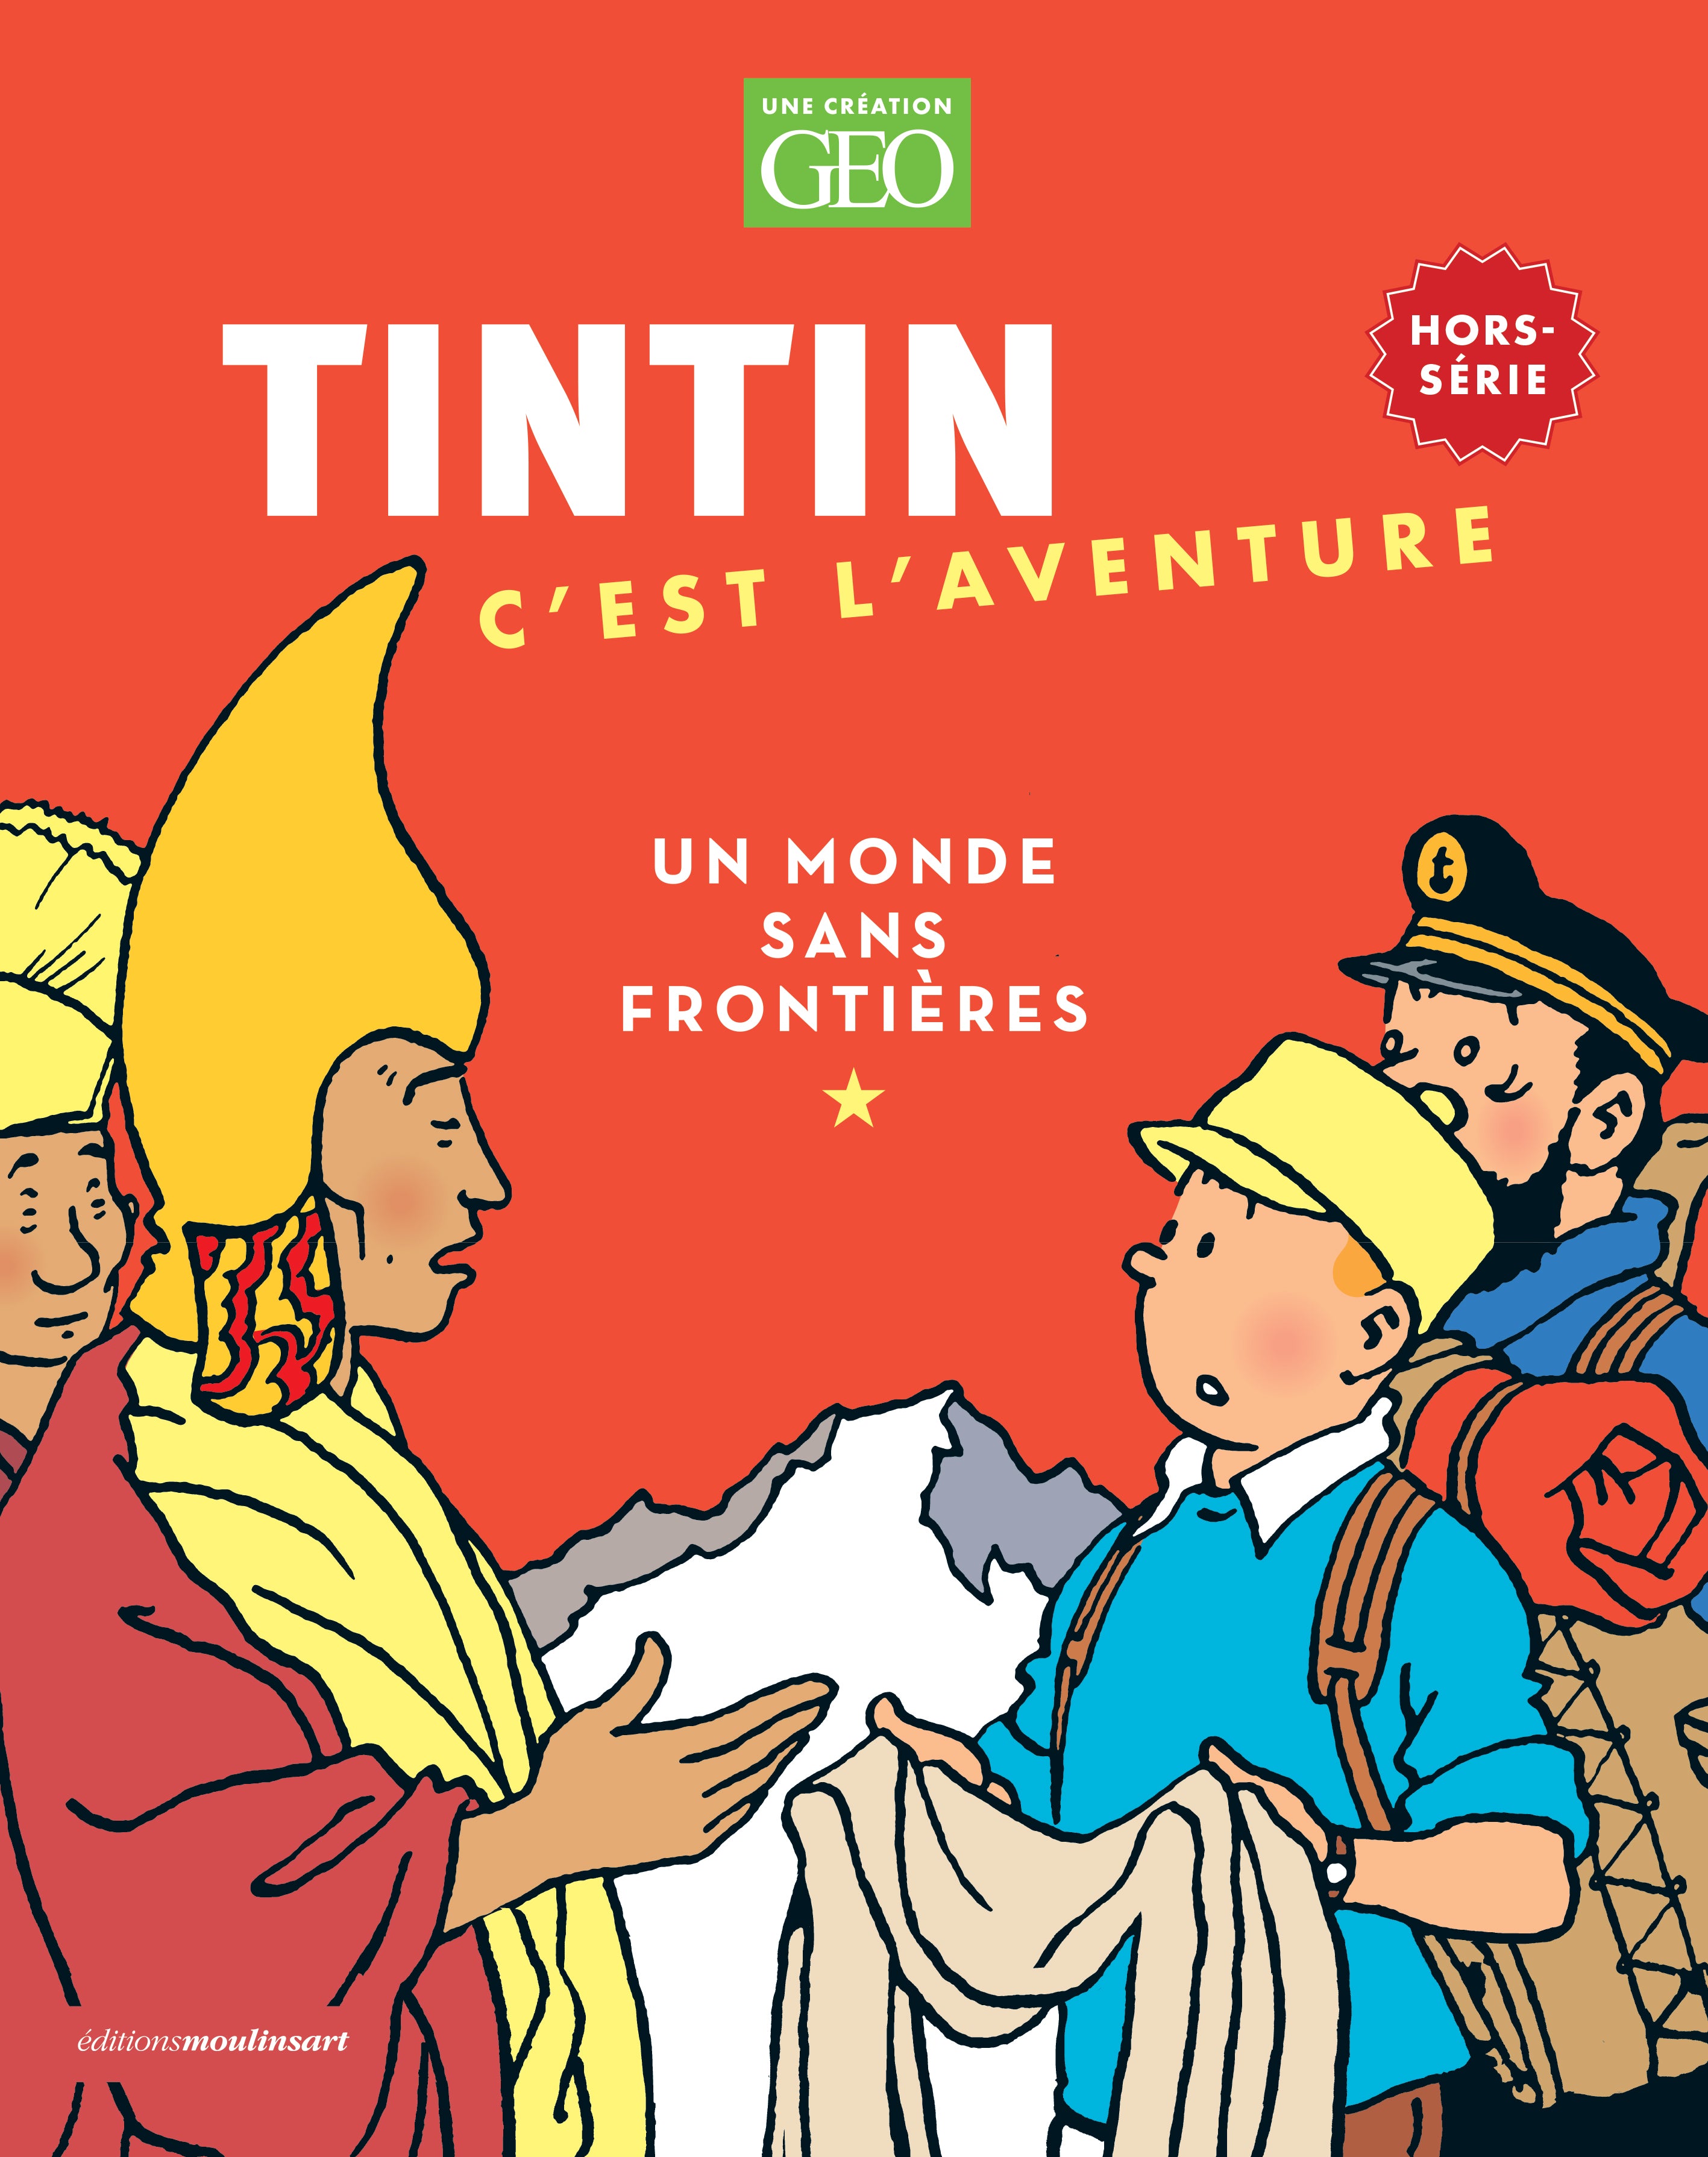 Tintin : un monde sans frontières